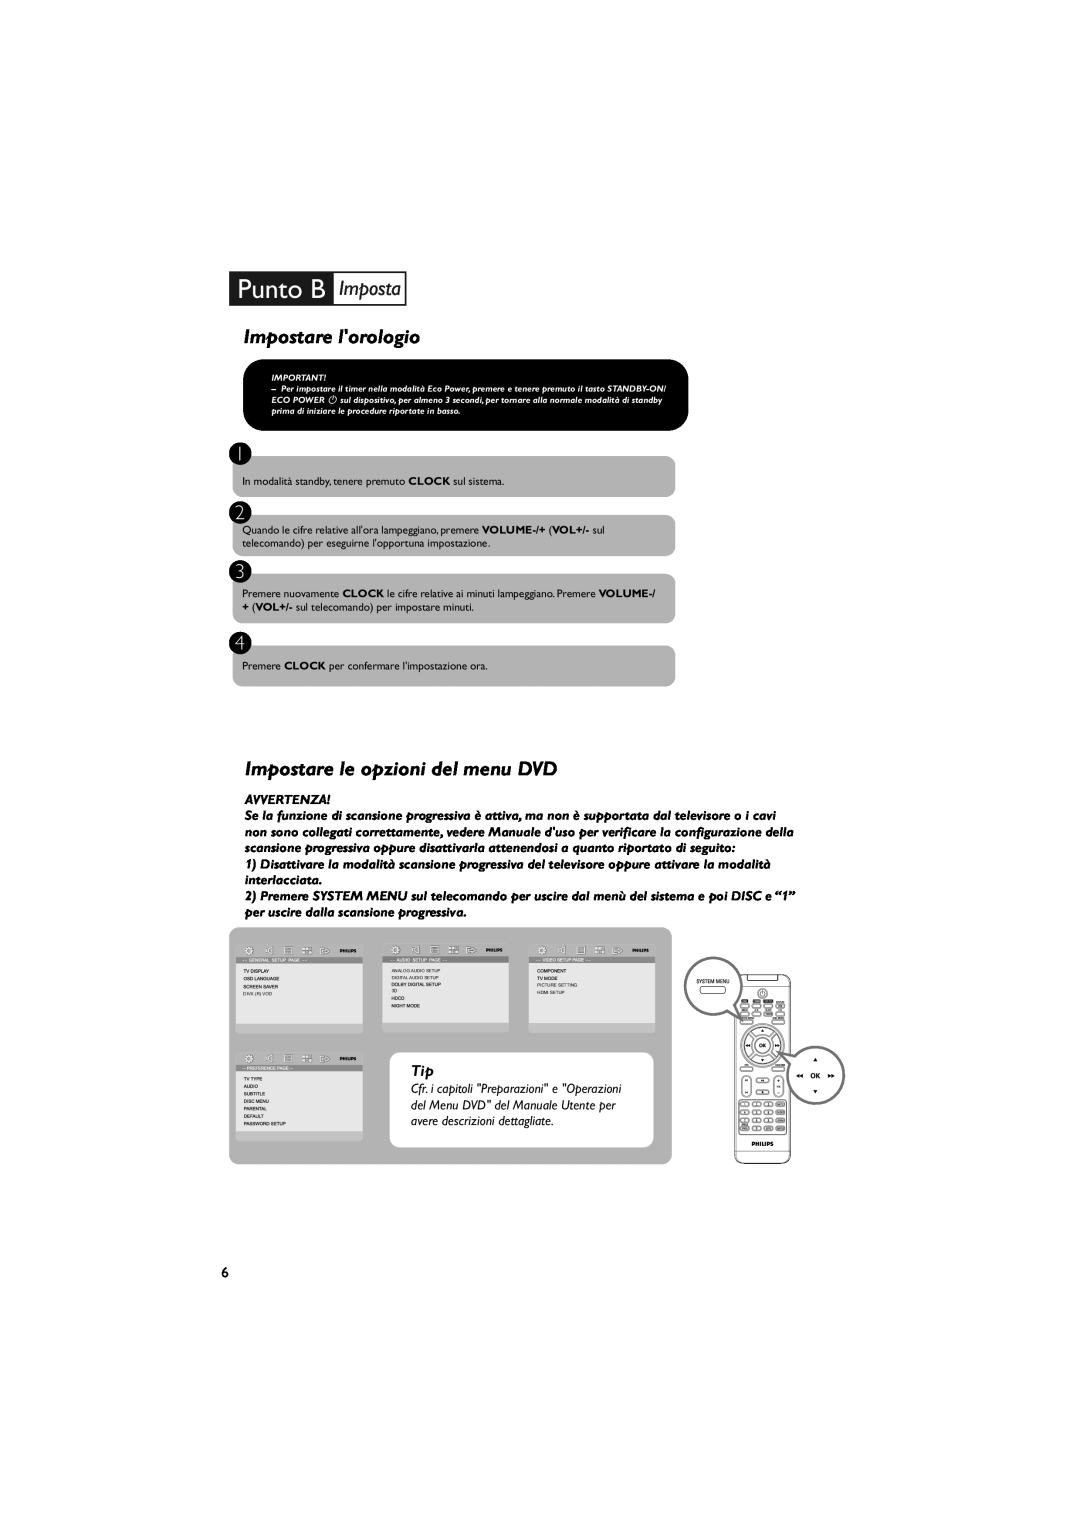 Philips MCD288E/12 Impostare lorologio, Impostare le opzioni del menu DVD, Punto B Imposta, avere descrizioni dettagliate 